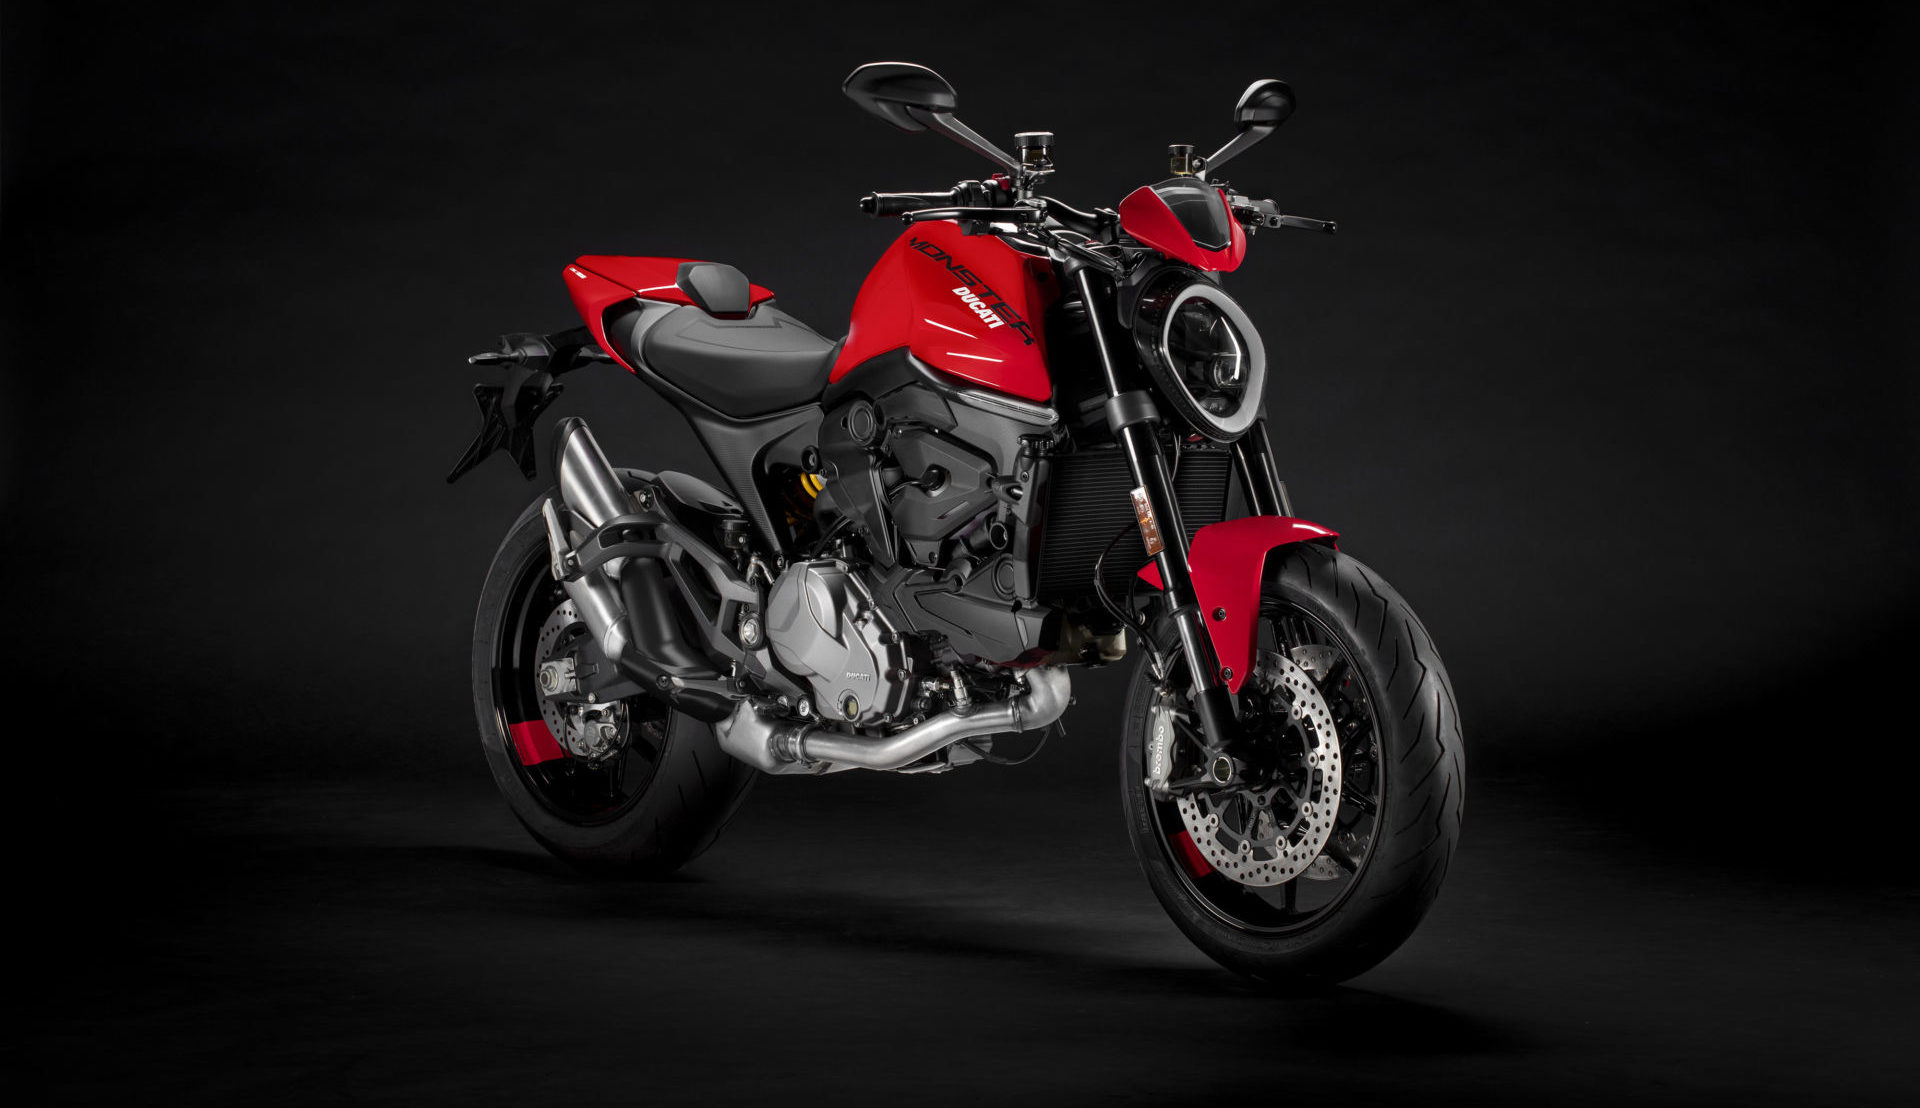 A 2021-model Ducati Monster Plus. Photo courtesy Ducati.